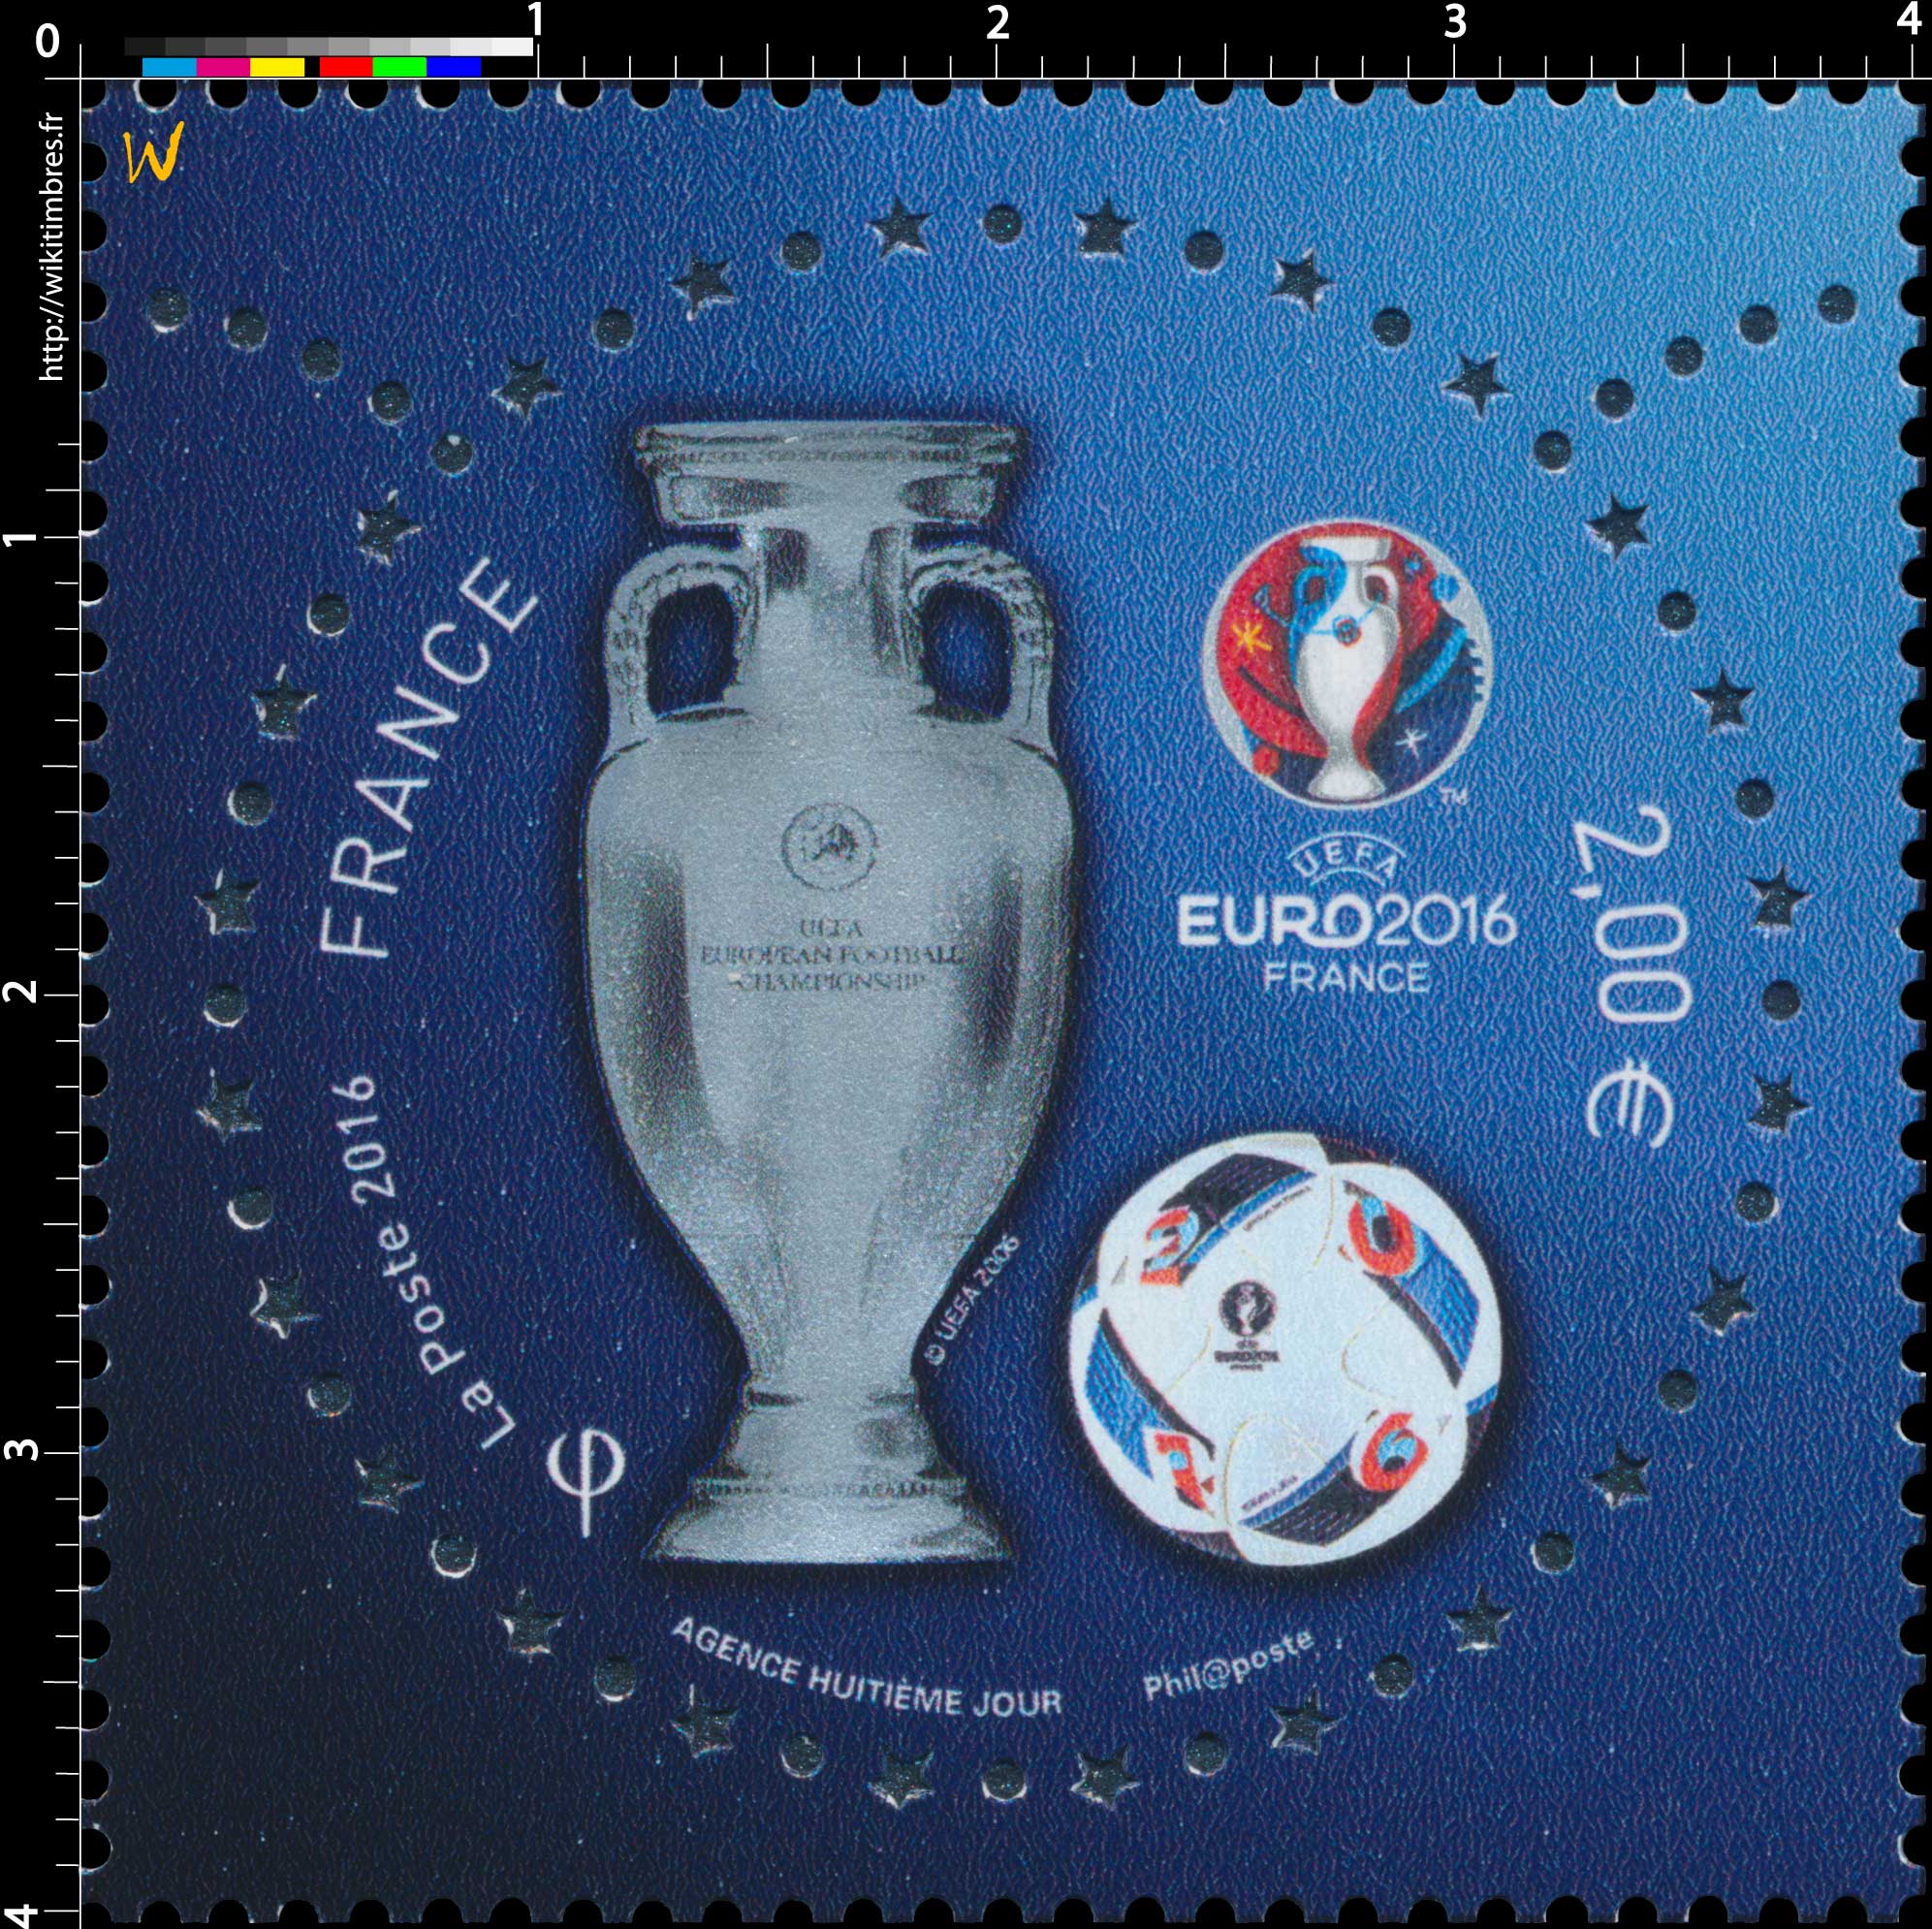 2016 UEFA Euro 2016